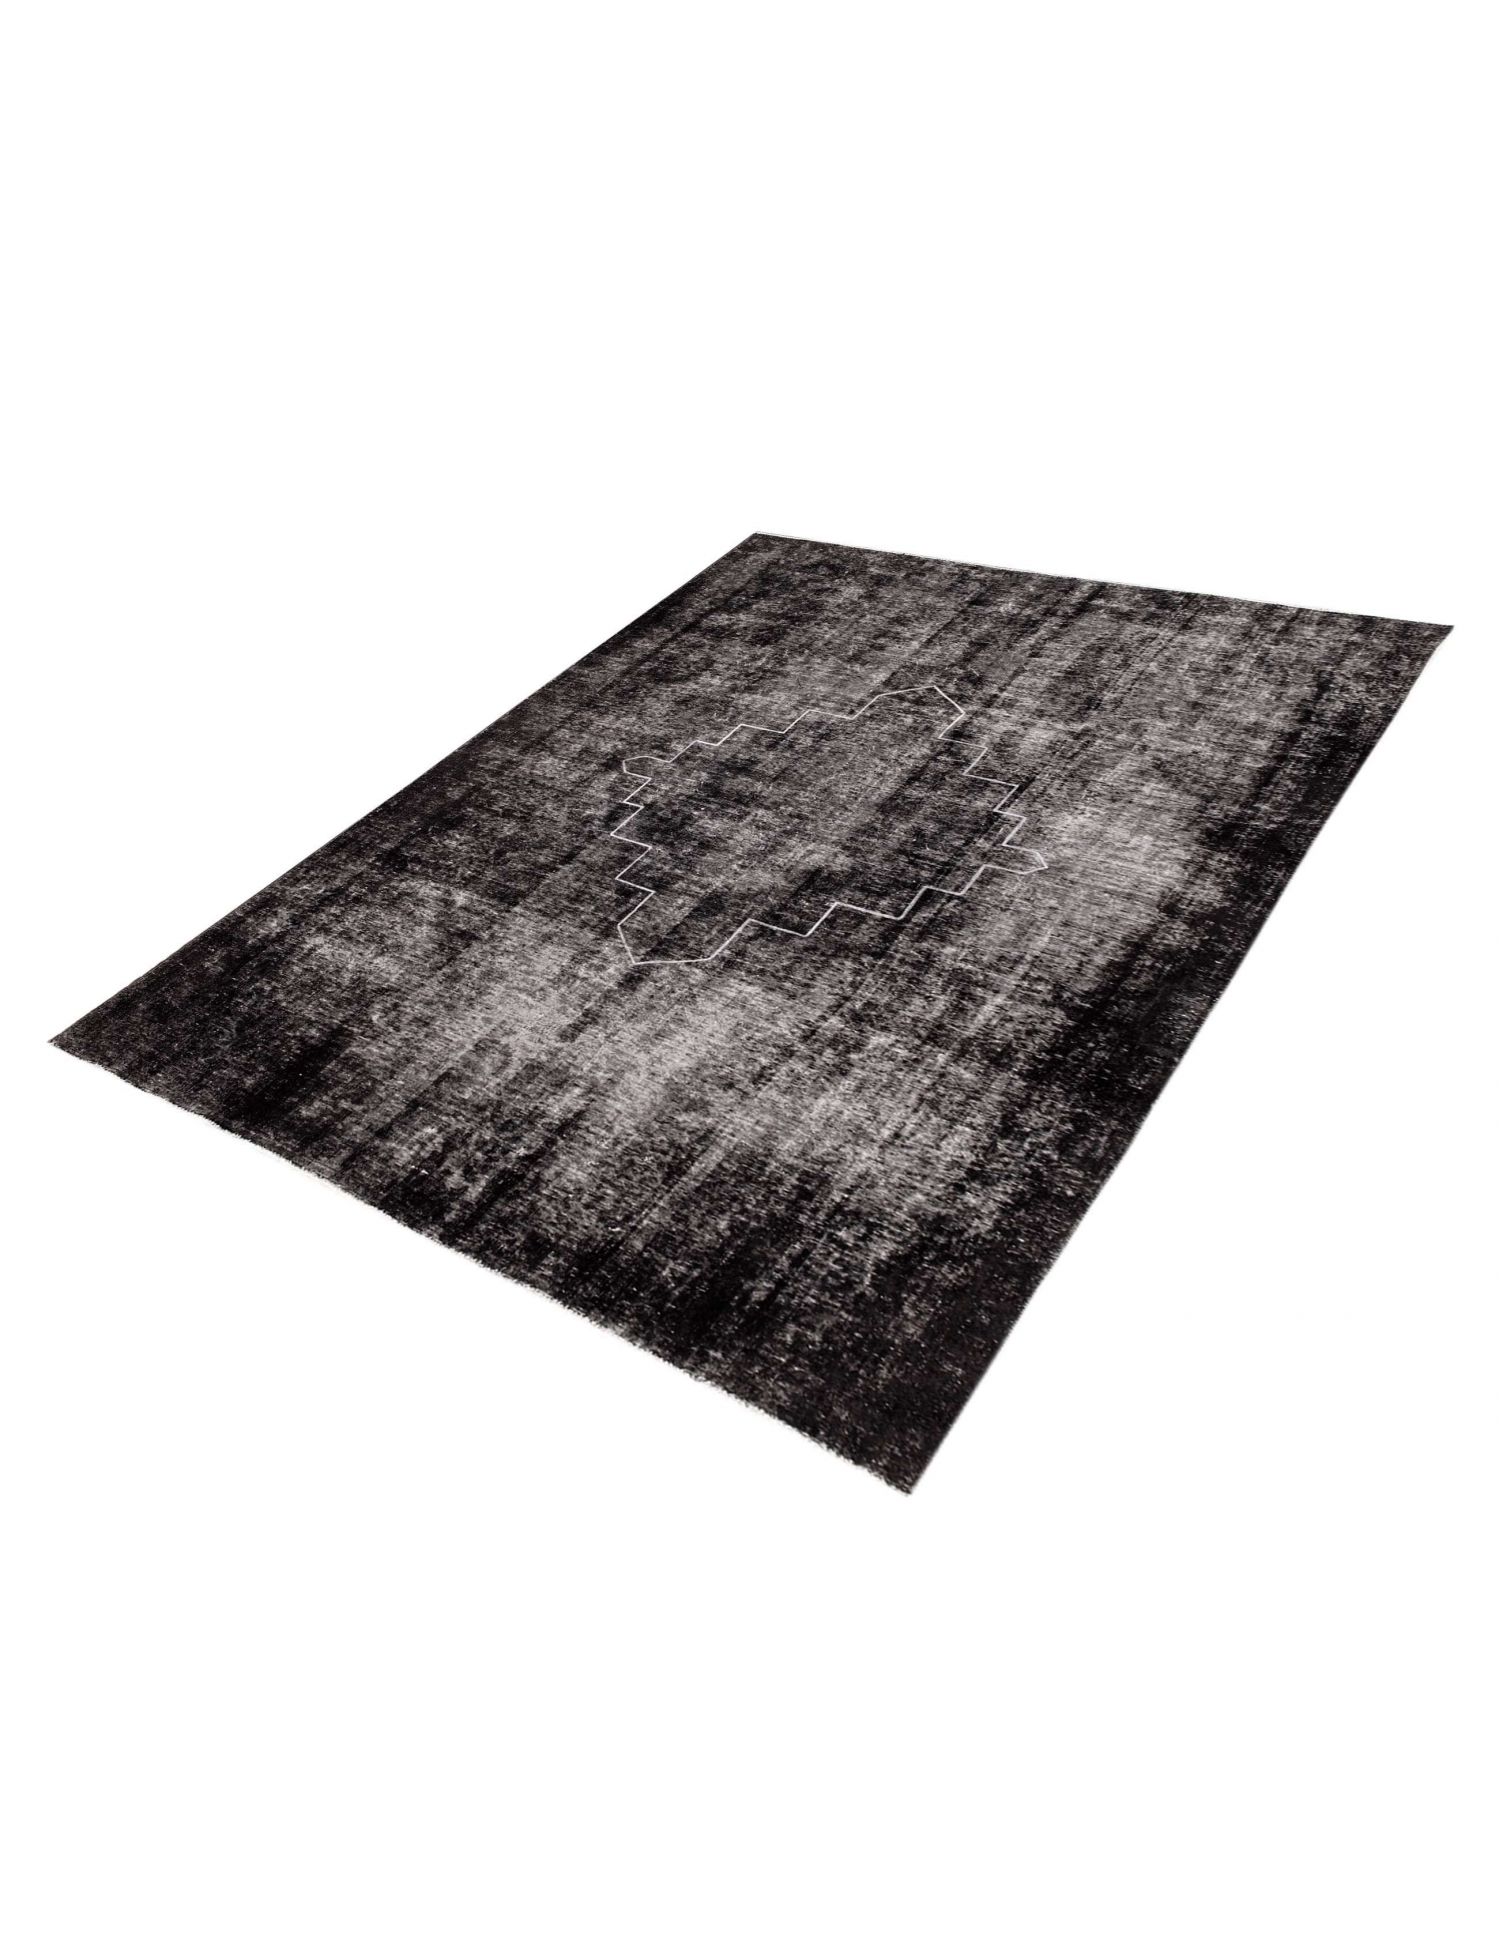 Persian Vintage Carpet  black <br/>330 x 245 cm